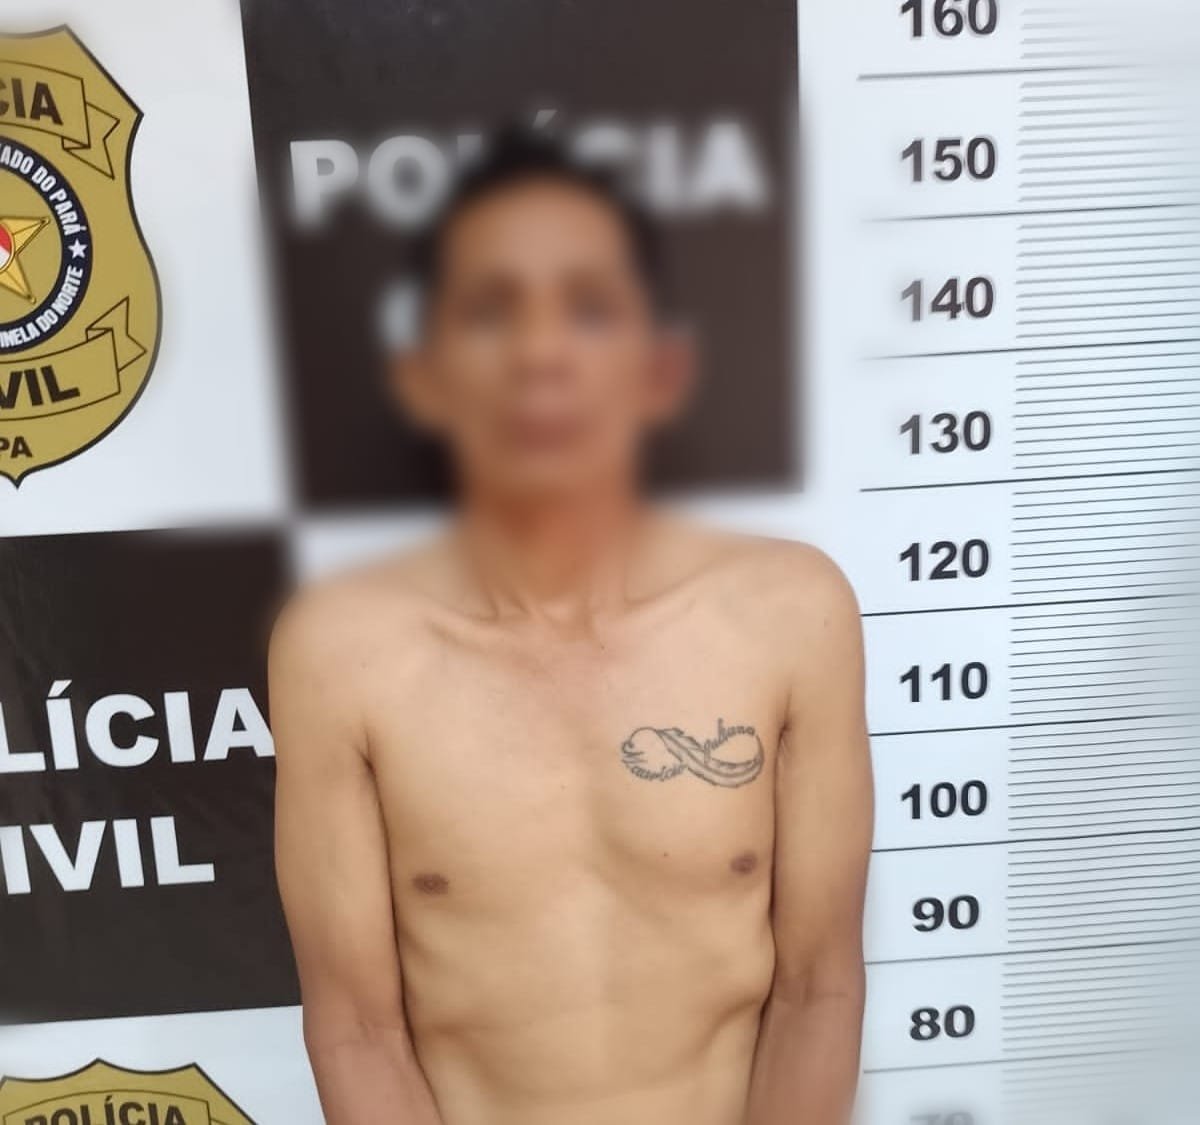 Peruano é preso por tentativa de furto com arrombamento em uma loja em Rurópolis, no PA 